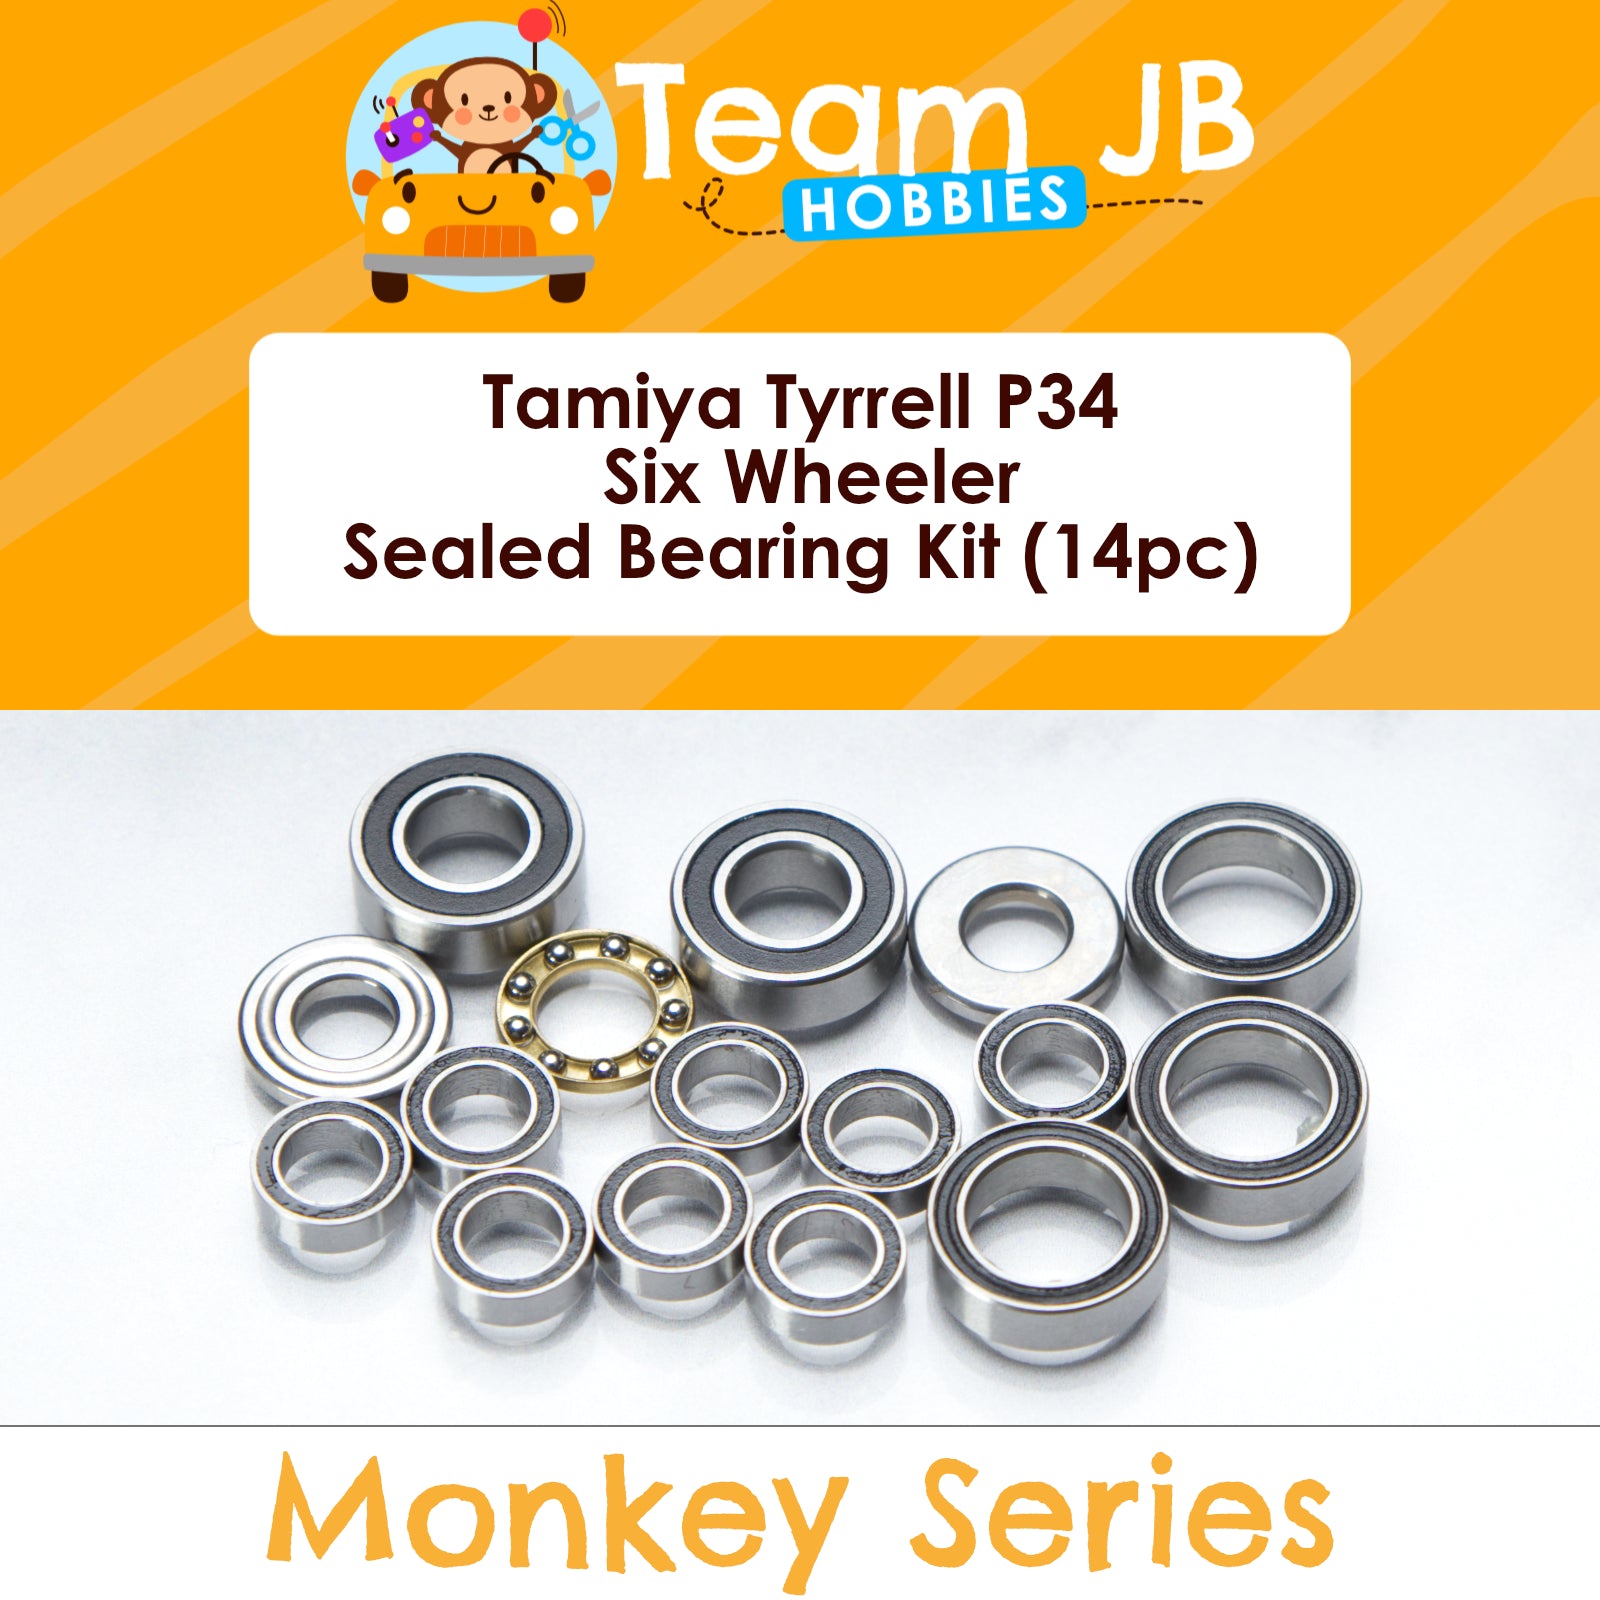 Tamiya Tyrrell P34 Six Wheeler - #49154 - #47486 - Sealed Bearing Kit